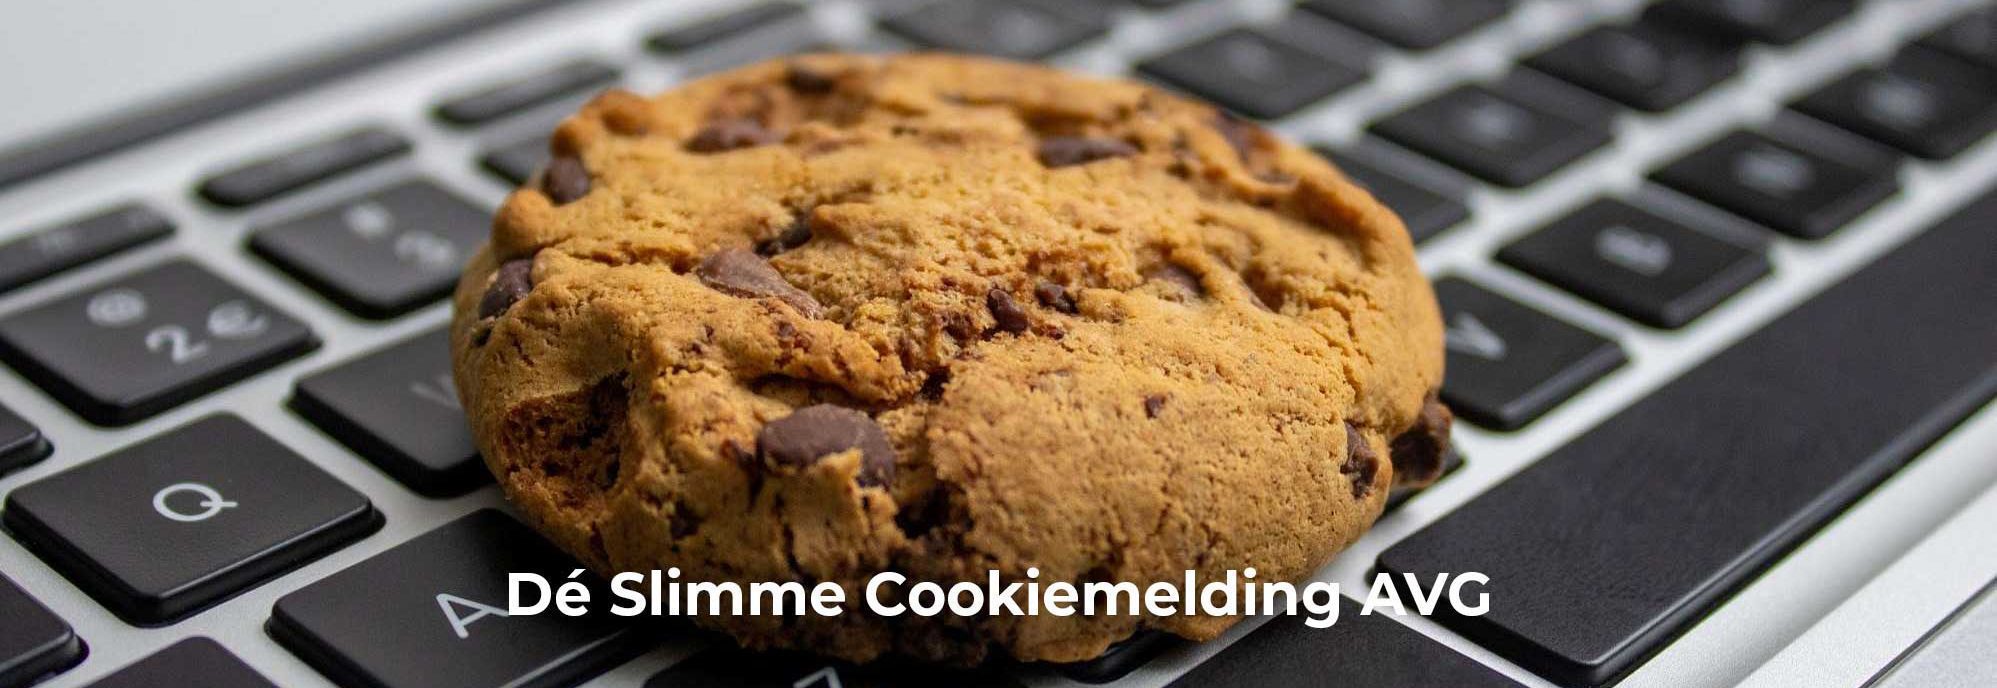 Hoe werkt de cookiemelding AVG